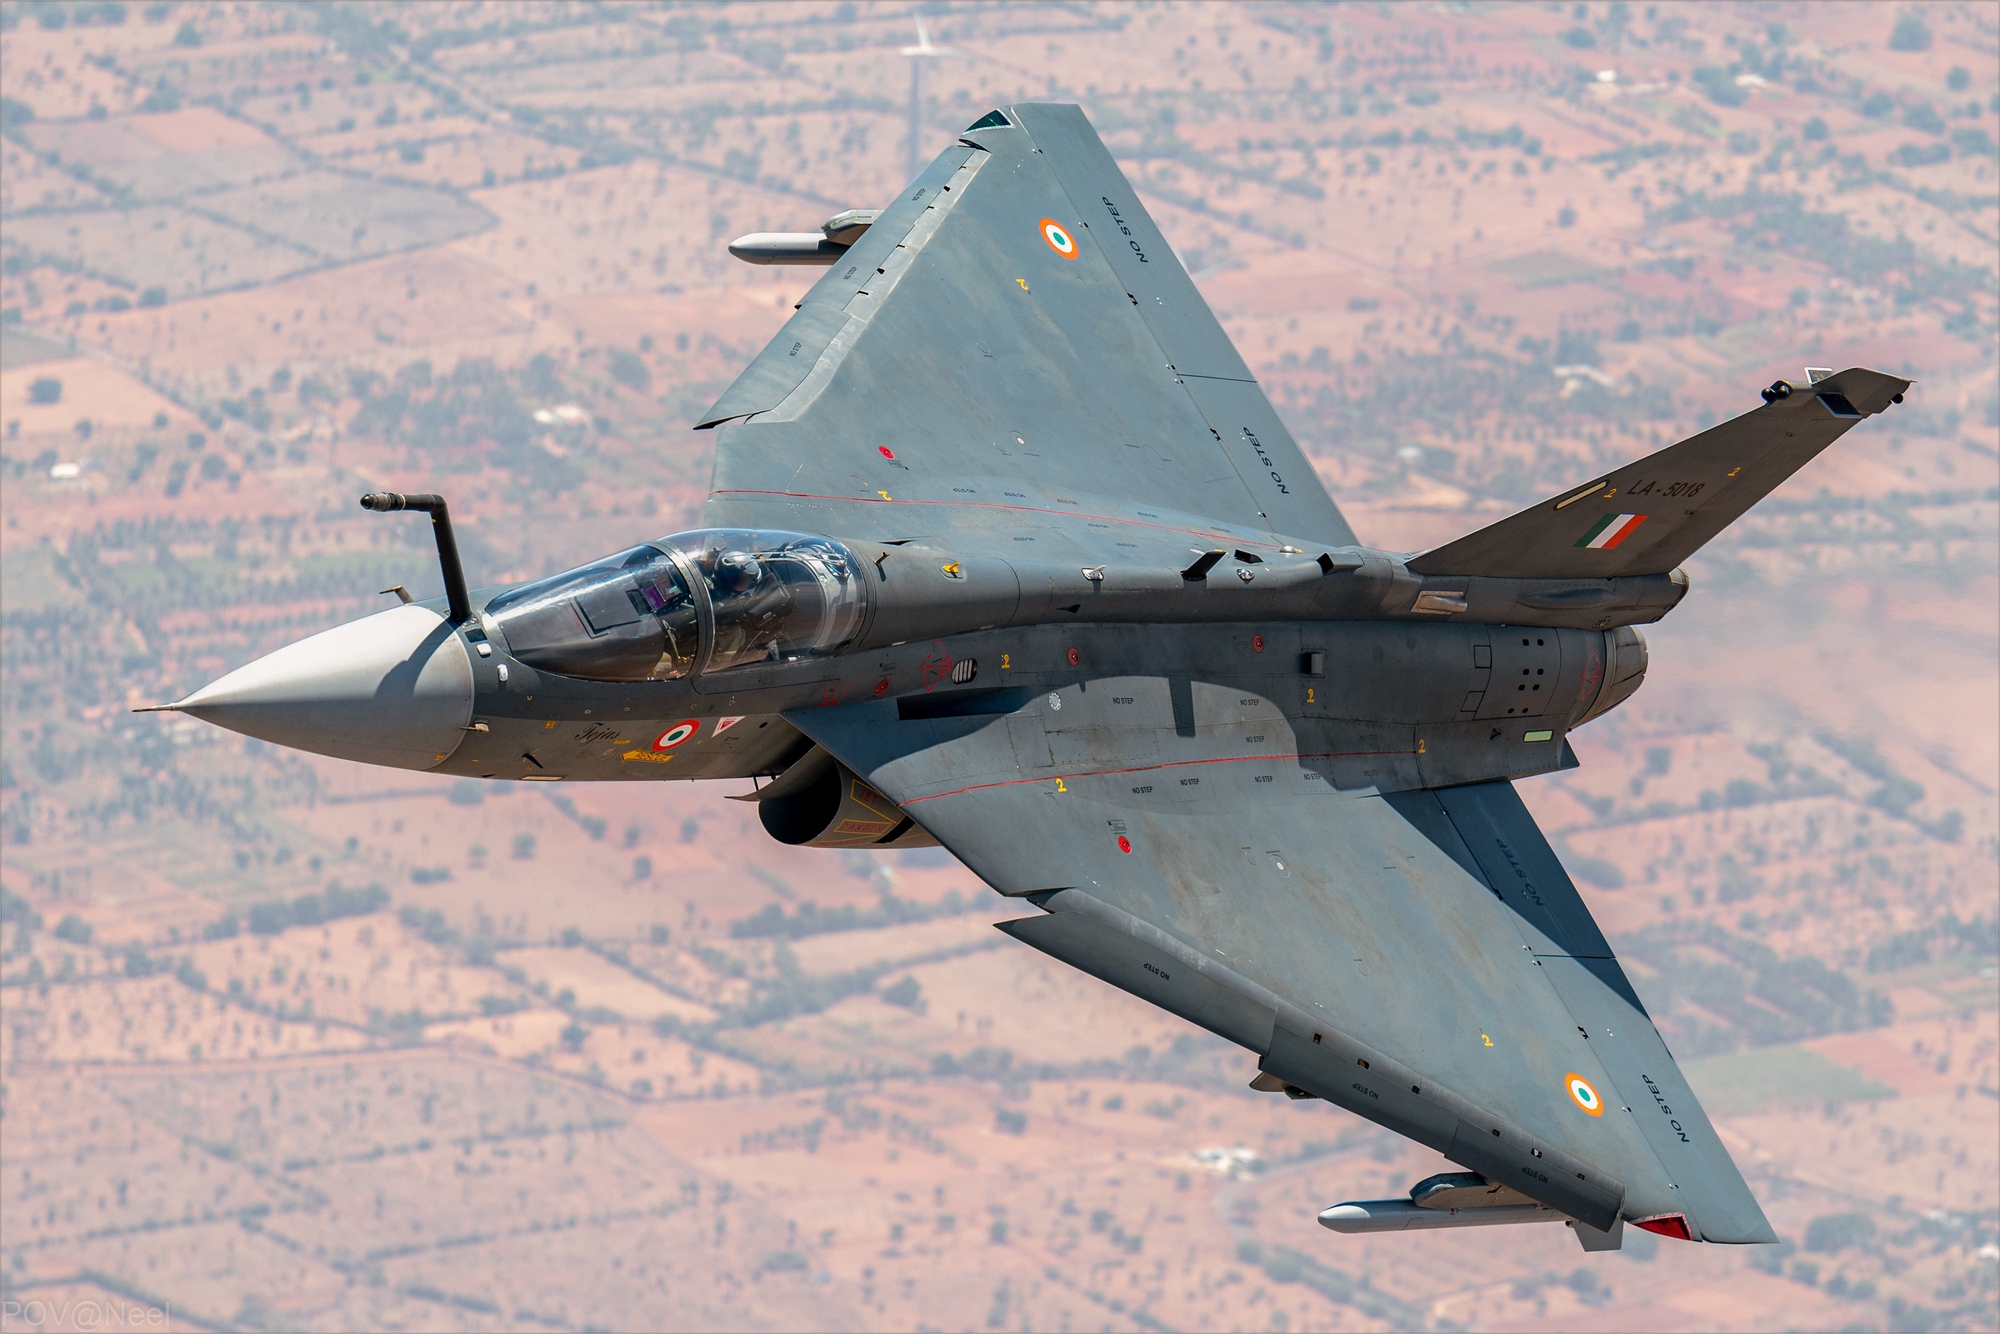 Một chiến đấu cơ nội địa LCA Tejas của không quân Ấn Độ